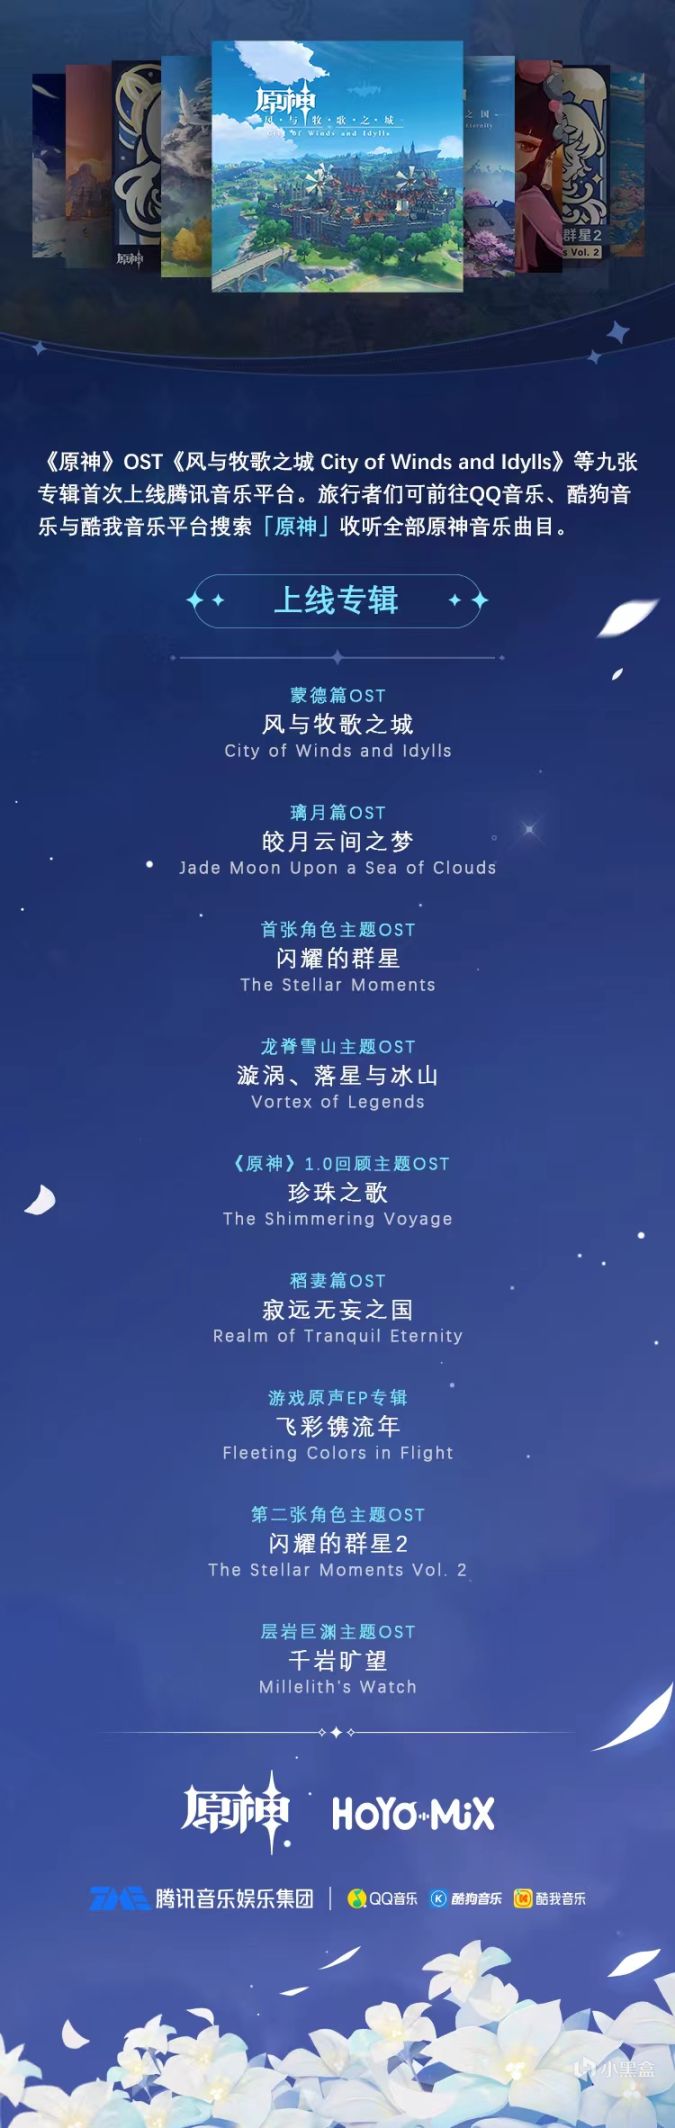 《原神》9張OST現已上線騰訊音樂平臺-第0張